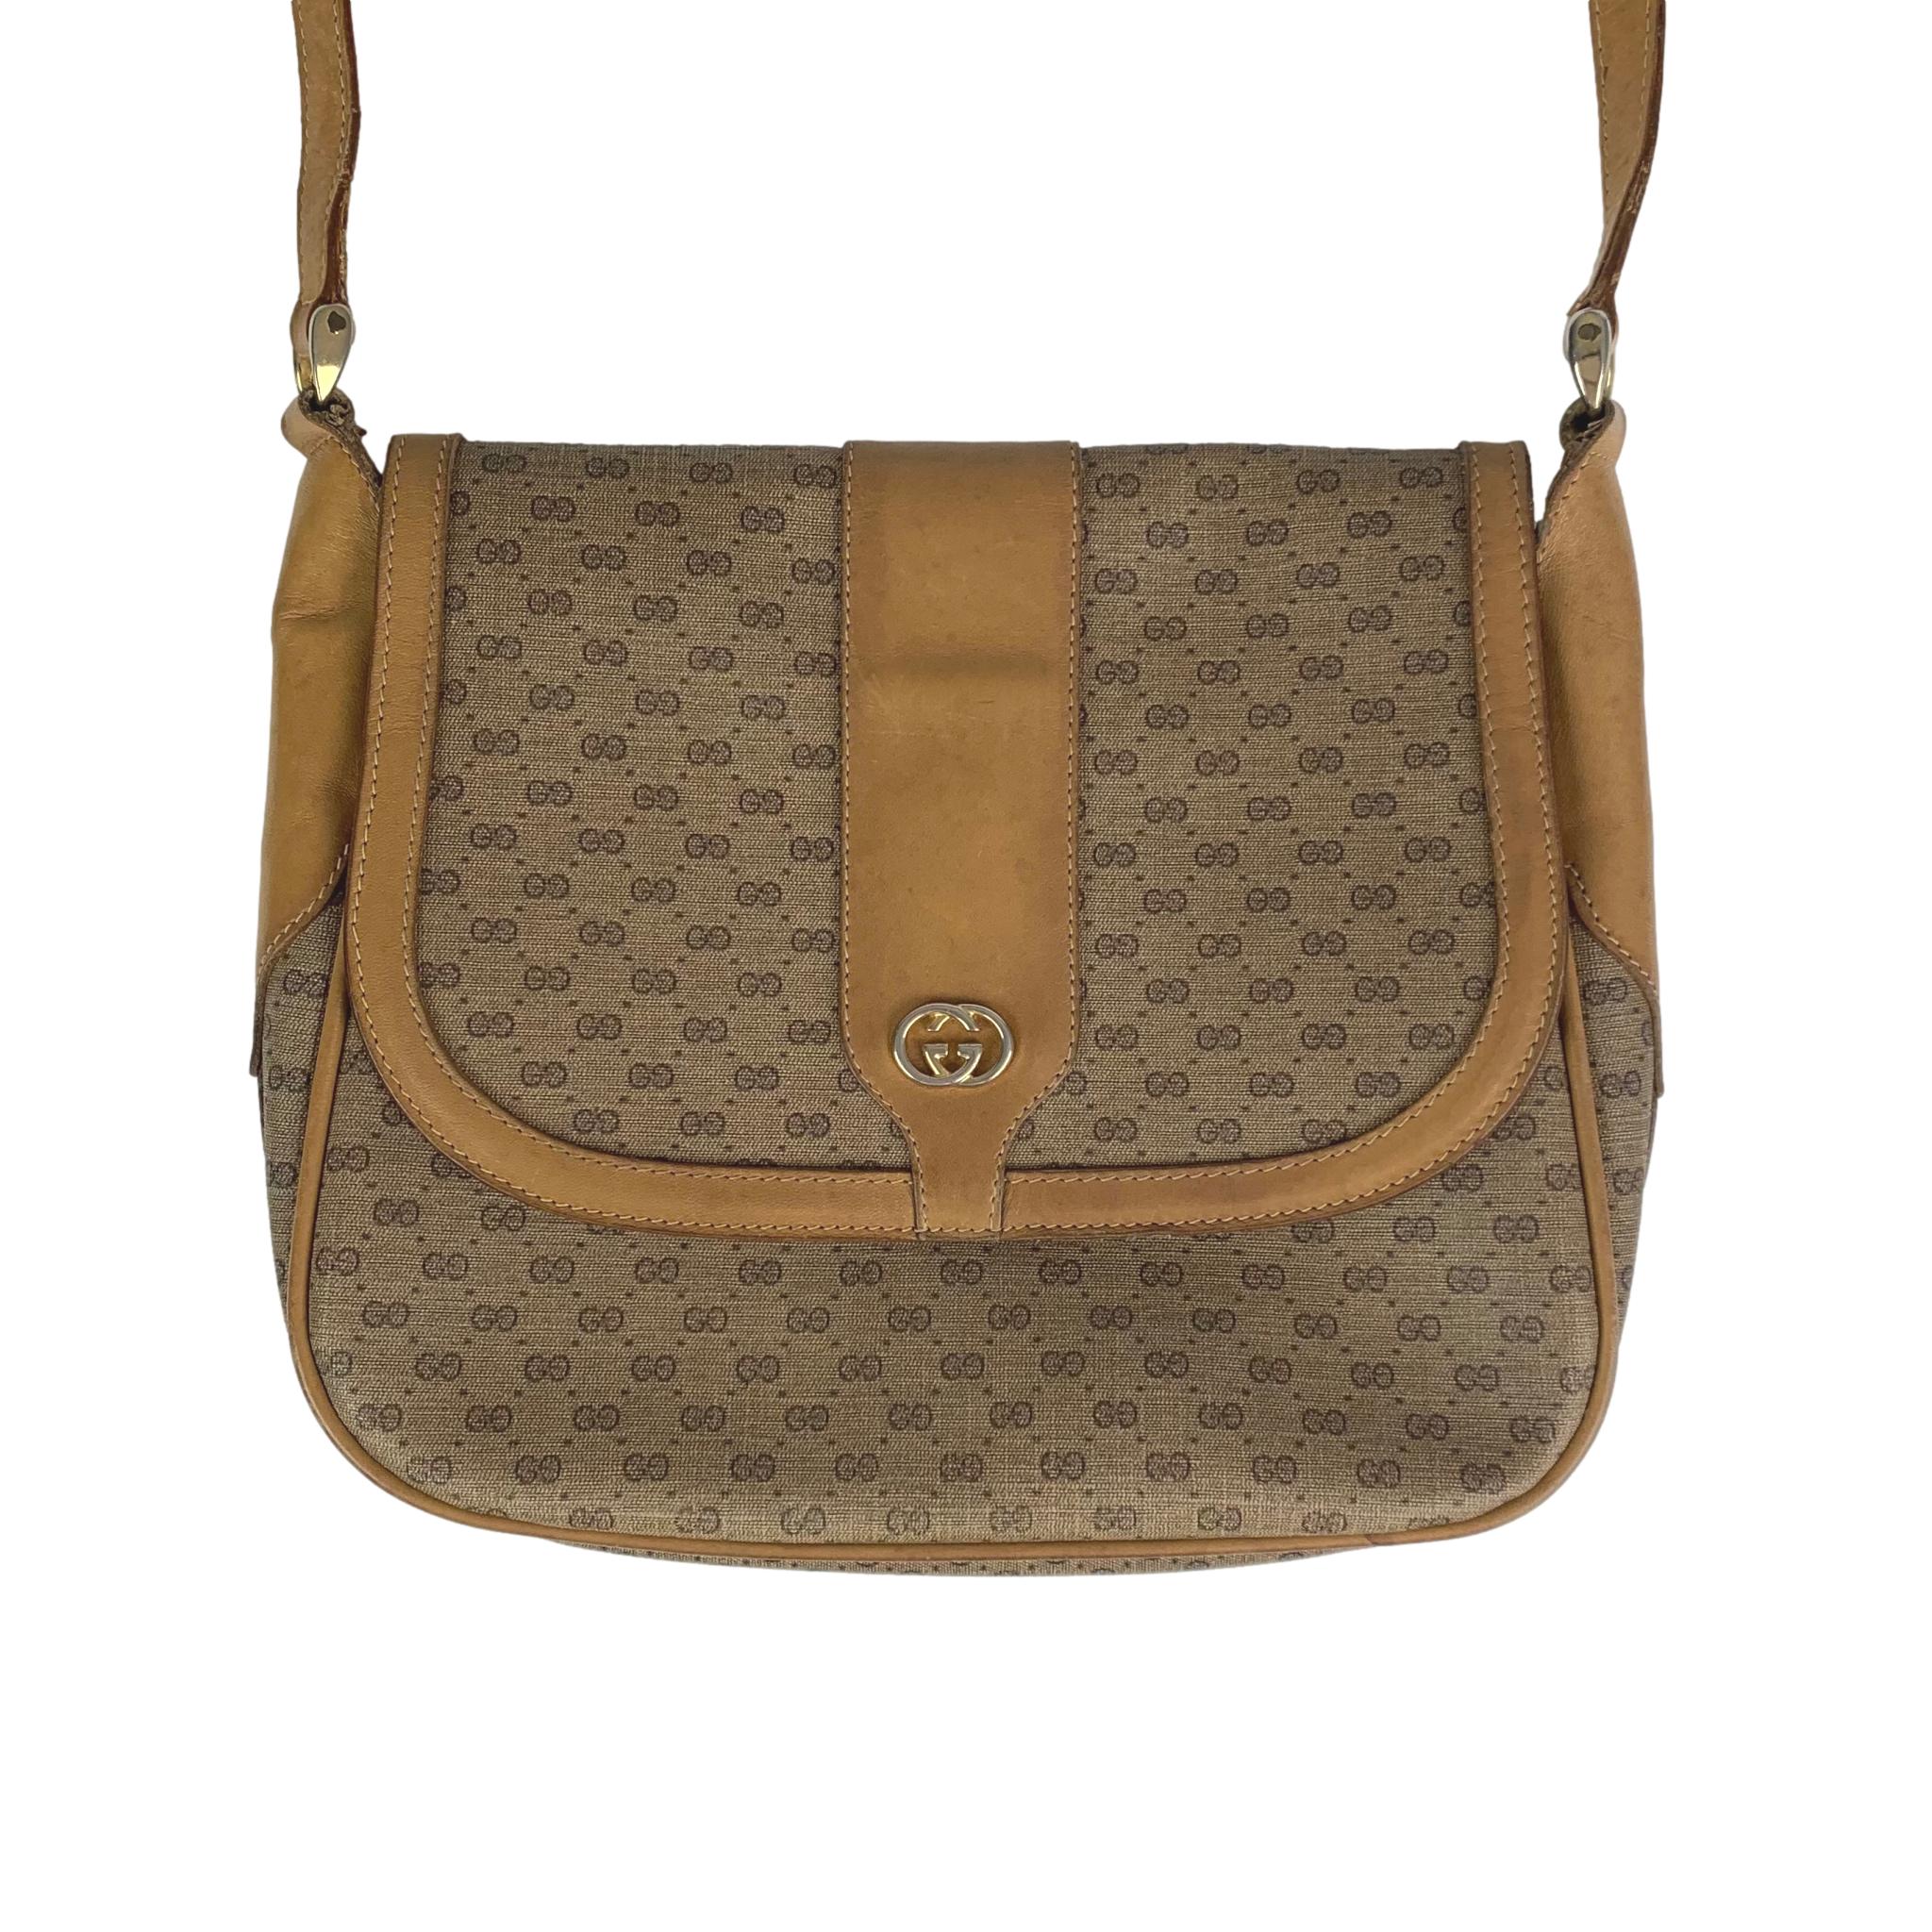 Vintage Gucci Brown Leather Shoulder Bag - Gucci